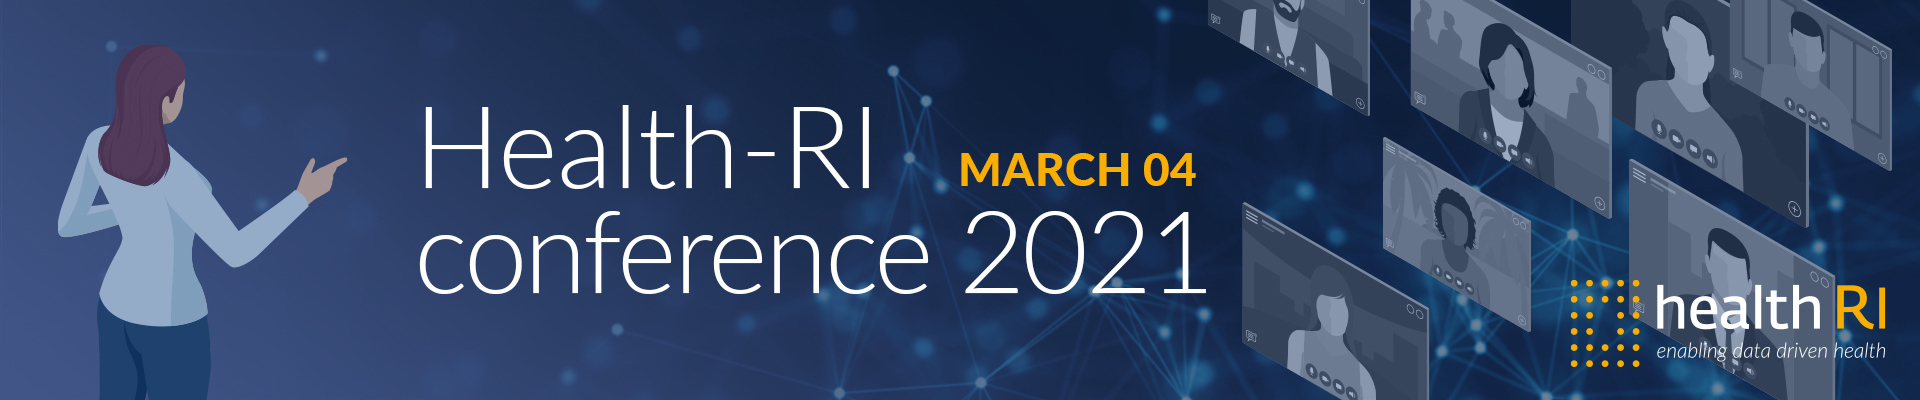 Health-RI Conference 2021